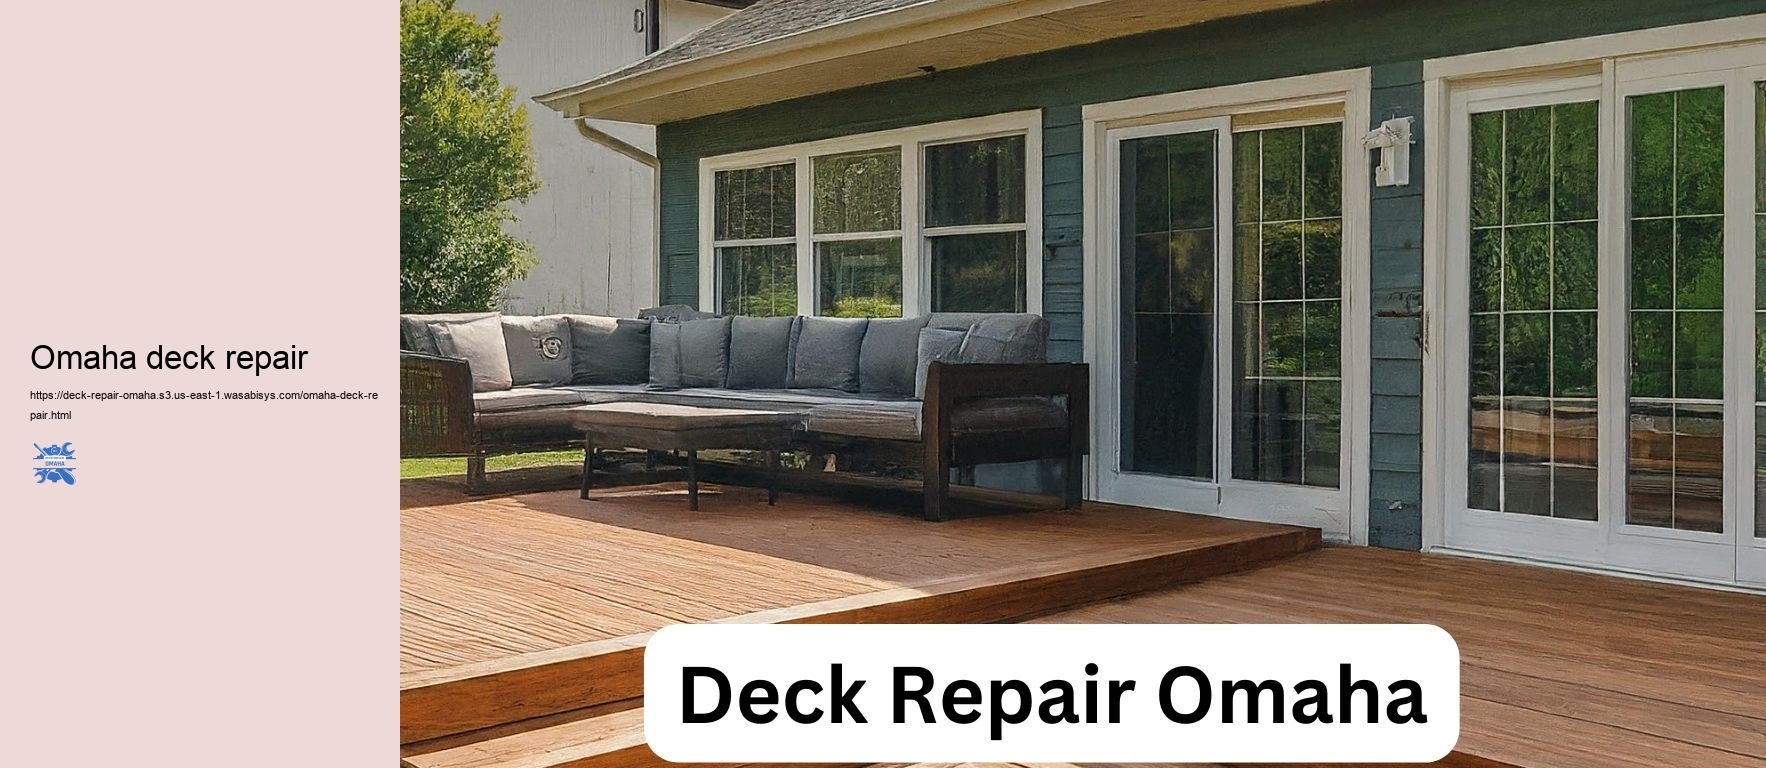 Omaha deck repair